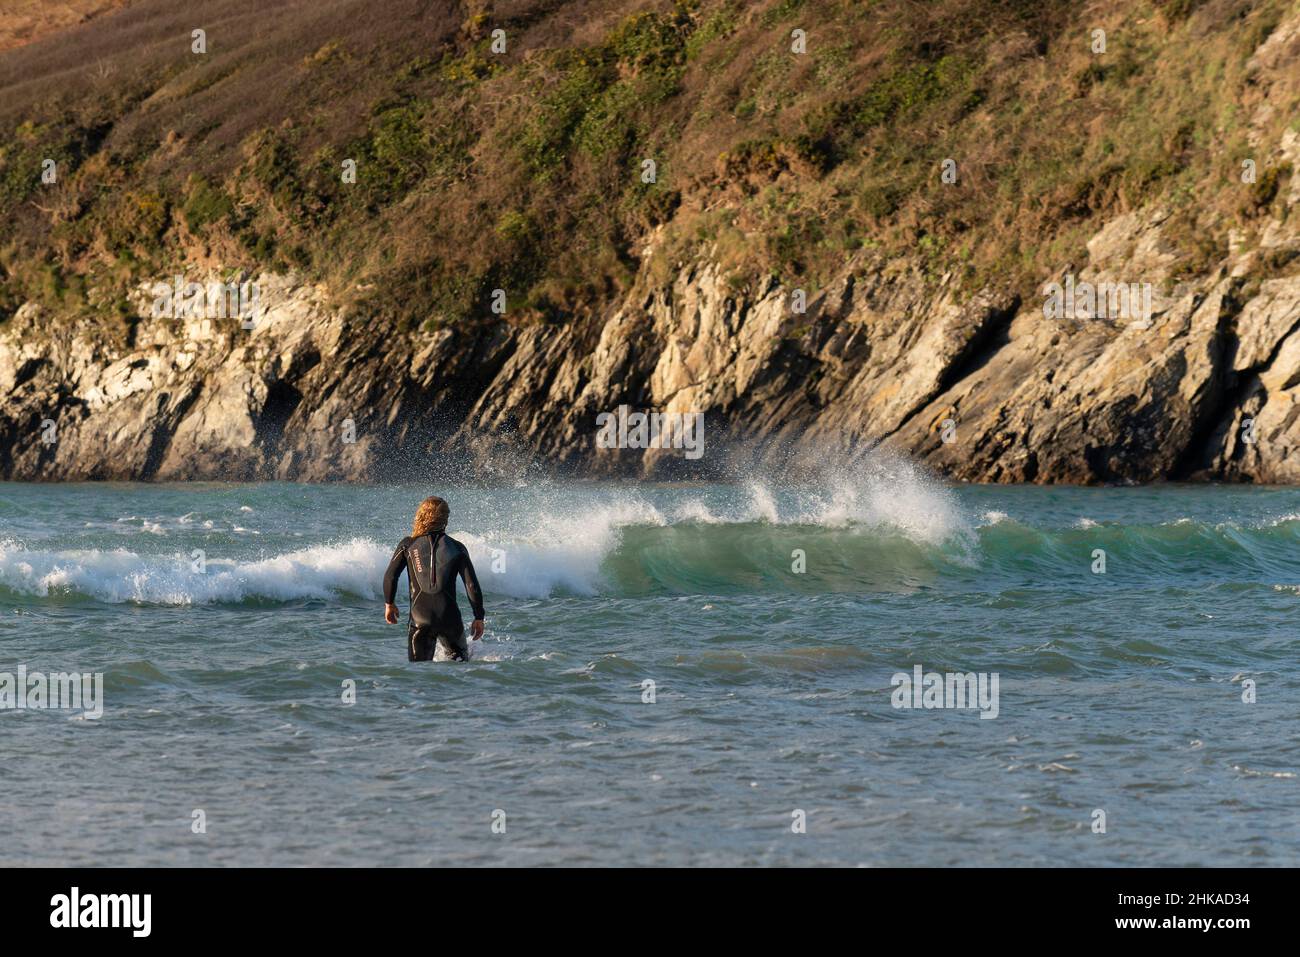 Ein Mann in einem Nassanzug, der am Crantock Beach in Newquay in Cornwall ins Meer geht. Stockfoto